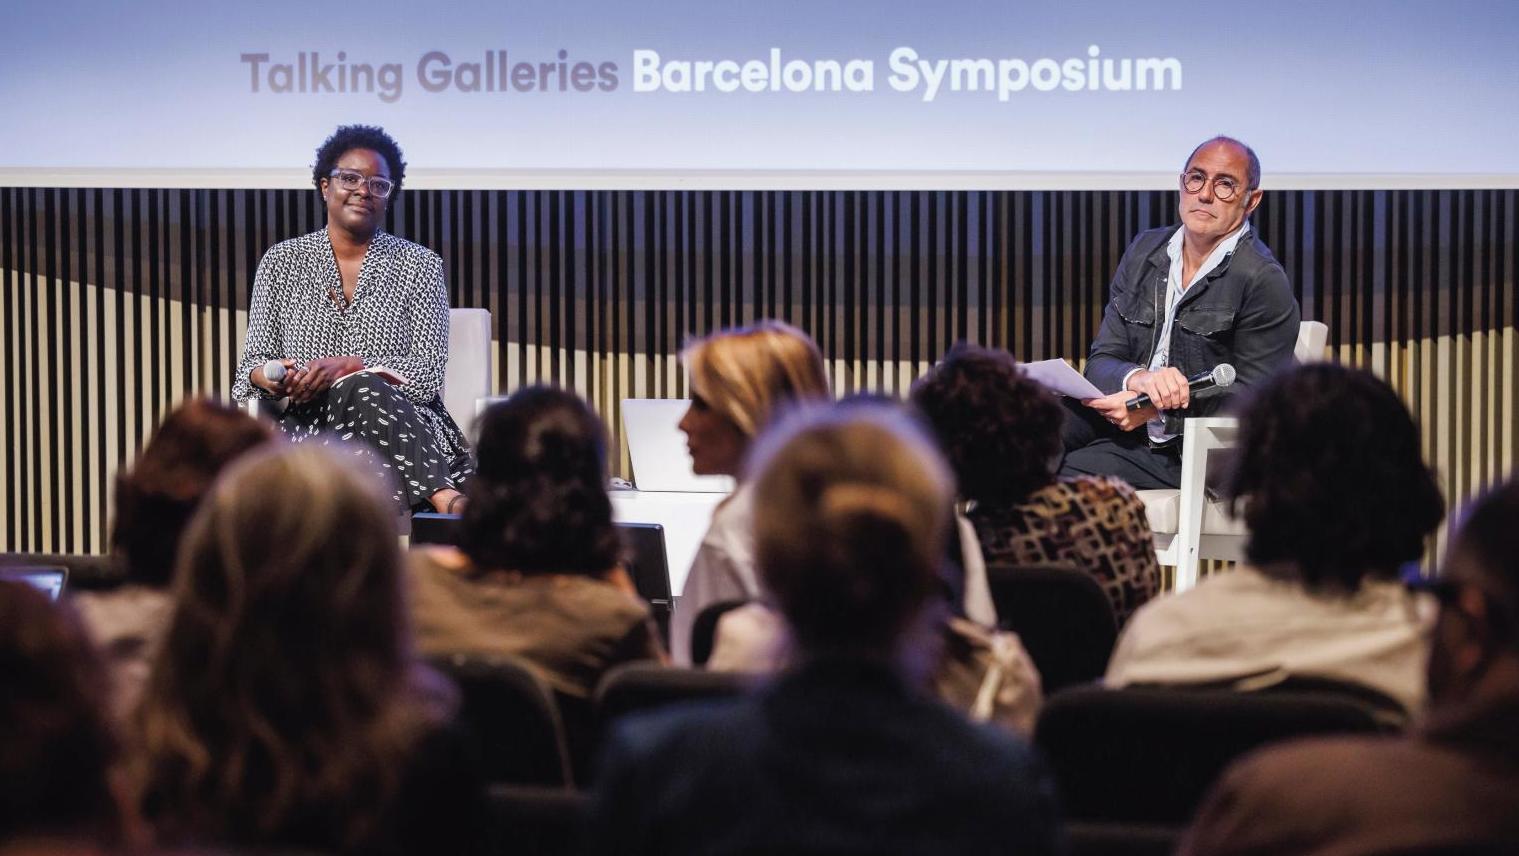 Dans le cadre des 9e Talking Galleries, Elvira Dyangani Ose et Carles Guerra intervenaient... Inclusivité, NFT et marché de l’art en ligne : Talking Galleries donne le ton